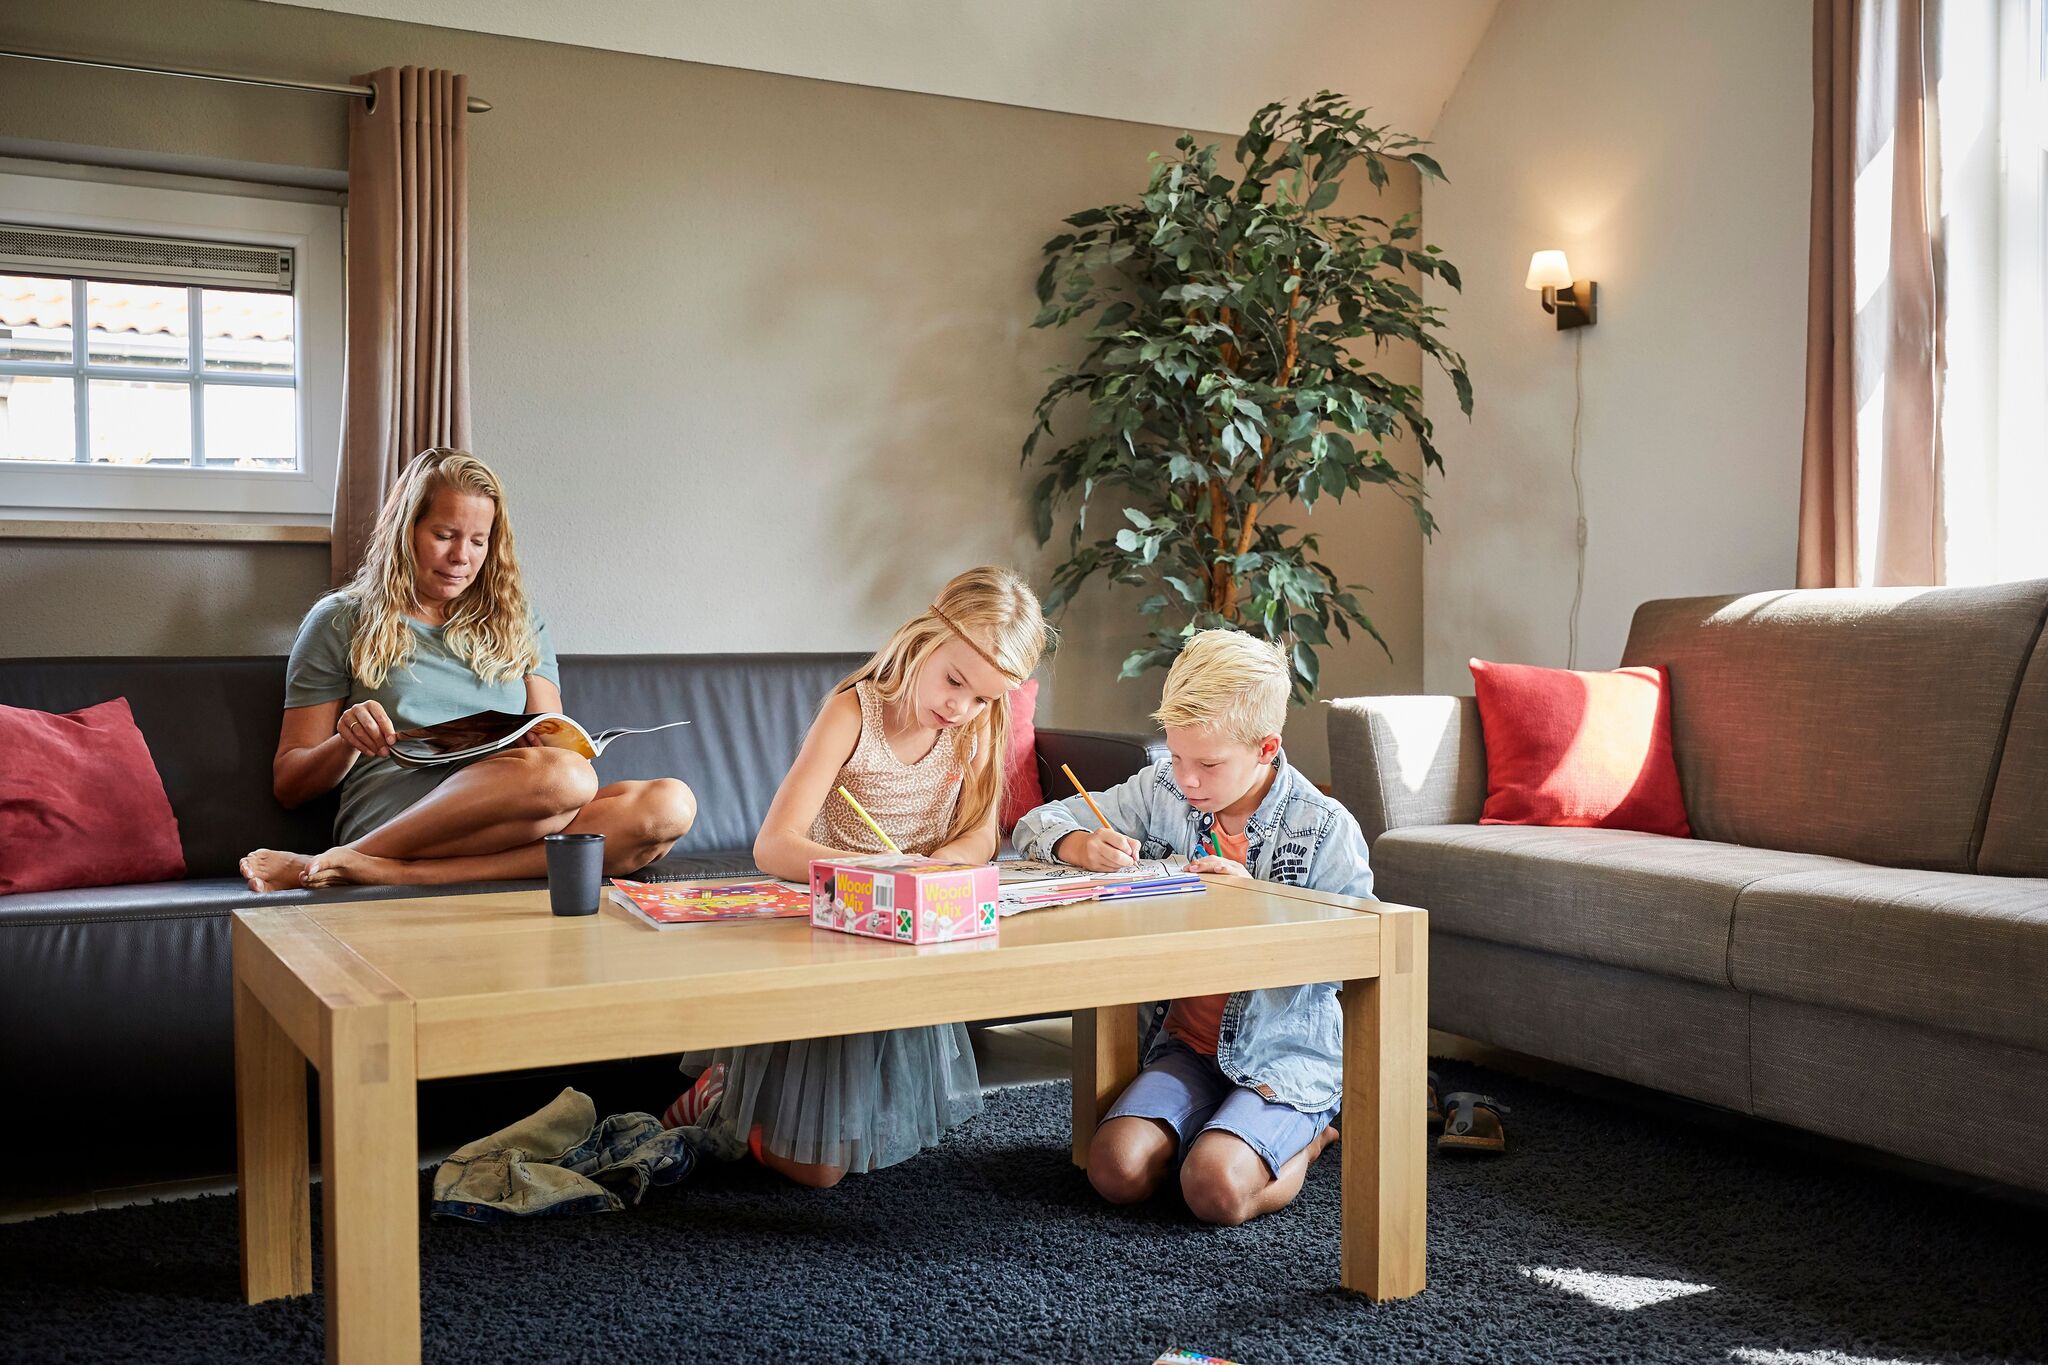 Luxuriöse kinderfreundliche Villa mit Sauna in Limburg